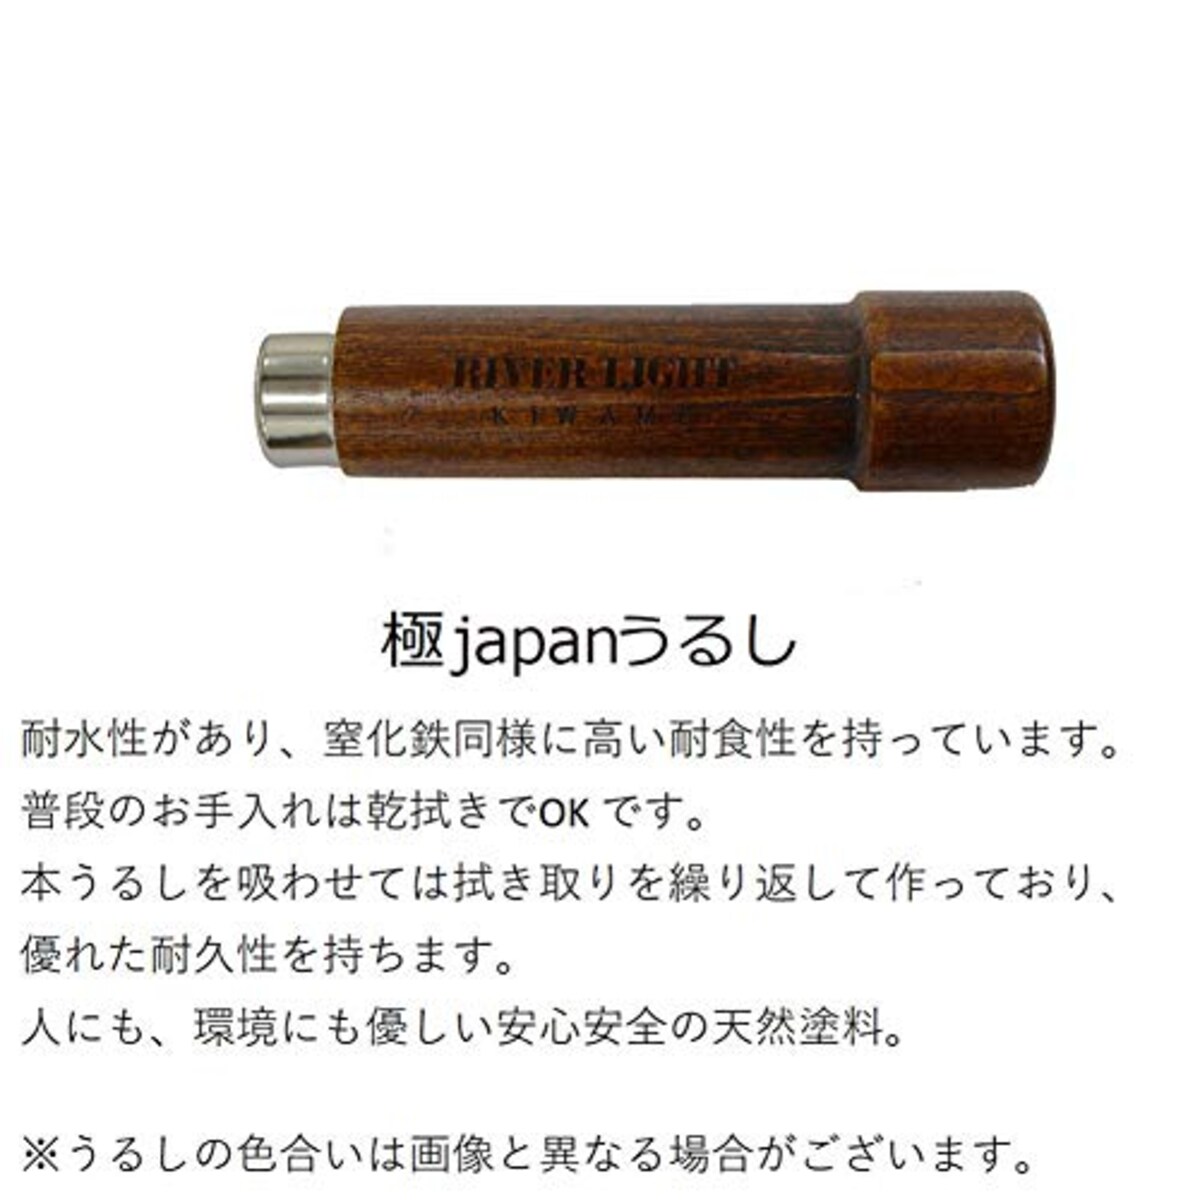  リバーライト 極japanうるし 鉄 たまご焼き フライパン 小 窒化鉄 窒化加工 IH対応 サビにくい 日本製 KU1613画像2 